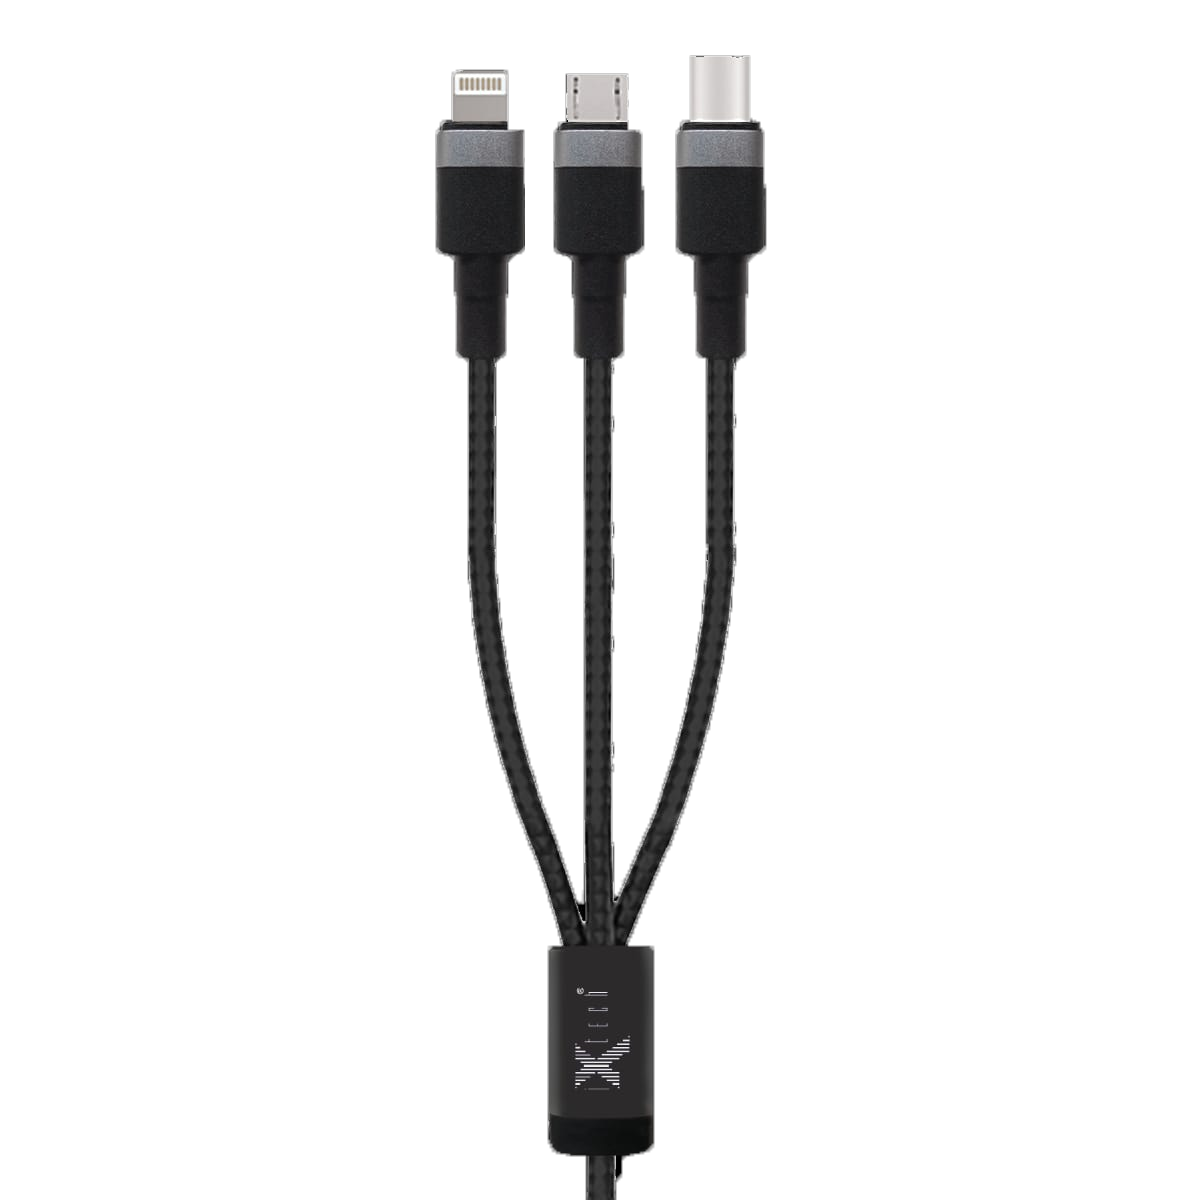 ixtech IX-UC011 3 in 1 2.4A USB DATA KABLO SETİ 3' ü 1 arada kablo seti sayesinde tüm cep telefonu modellerini şarj edebilirsiniz telefondukkani.com.tr den satın alabilirsiniz.